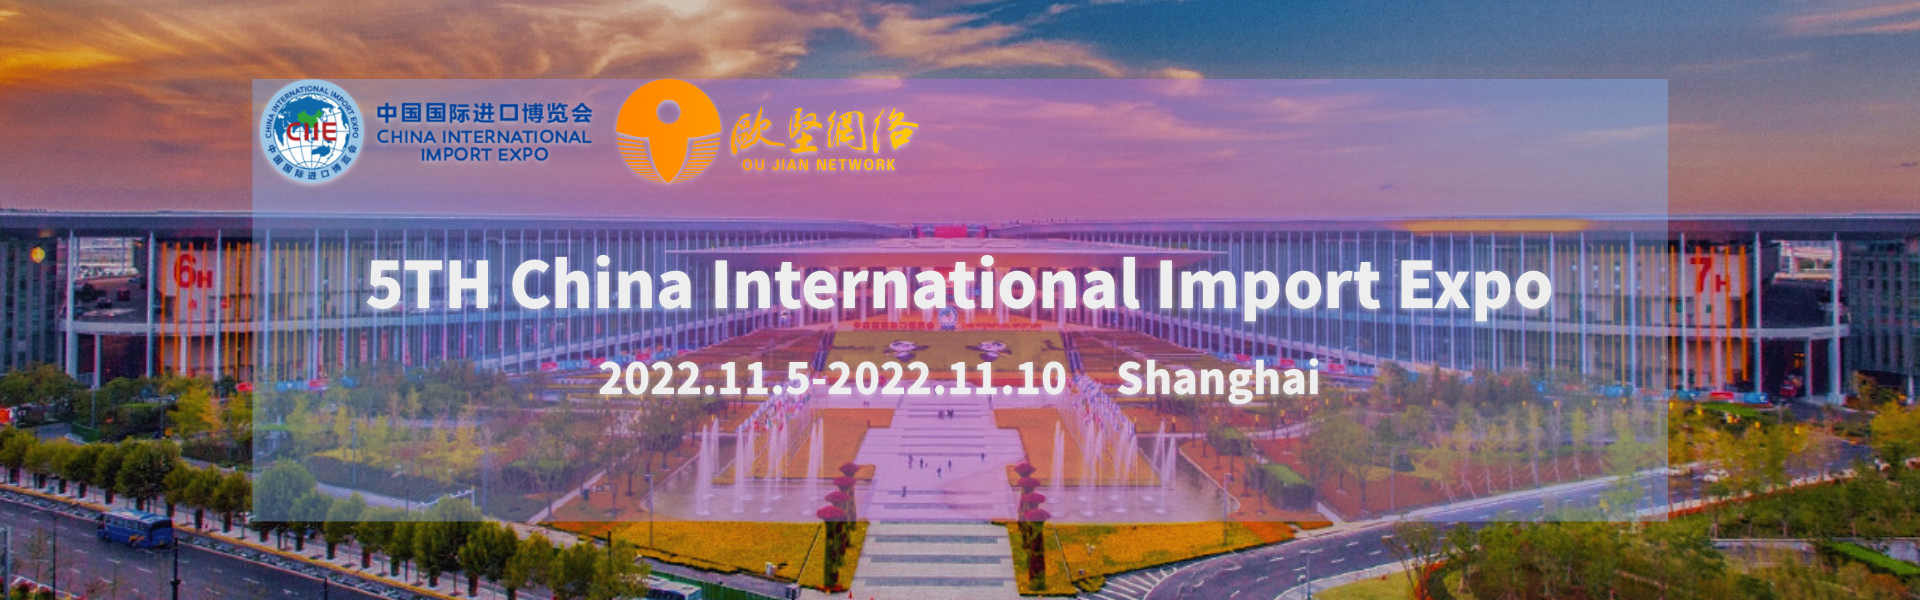 Kina International Import Expo